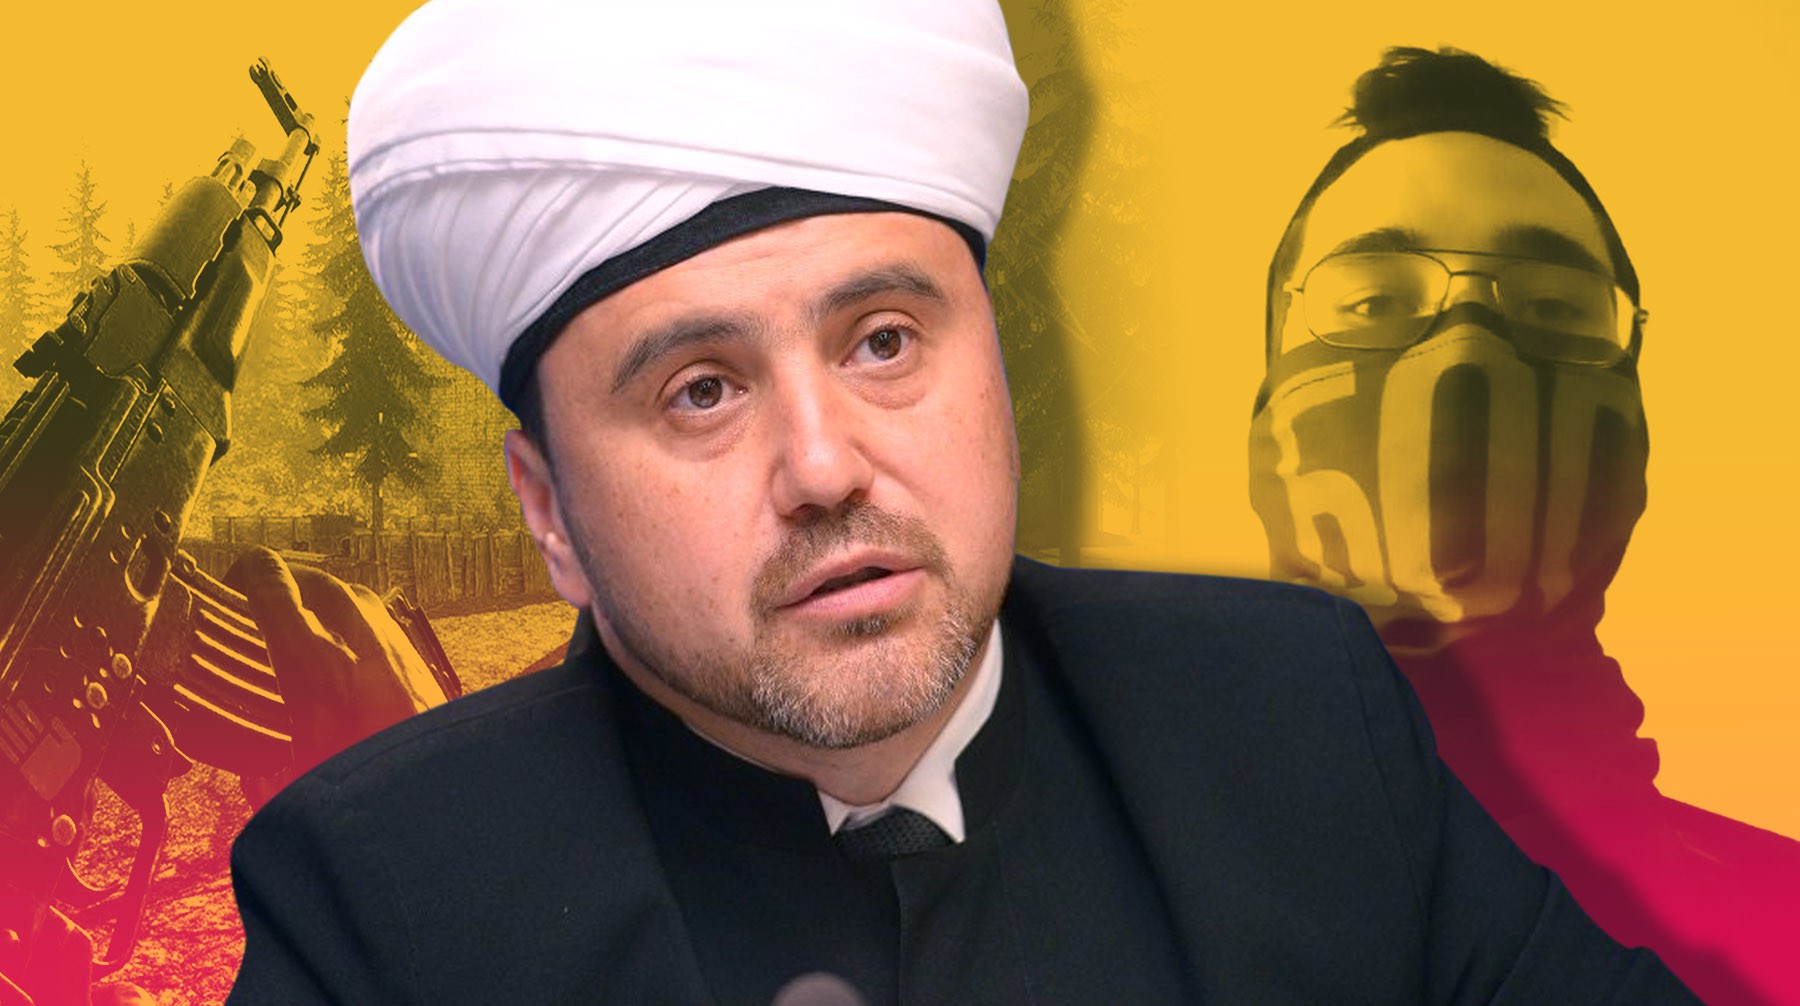 Dailystorm - Не все считающие себя богами стреляют: муфтий обвинил видеоигры в трагедии в Казани